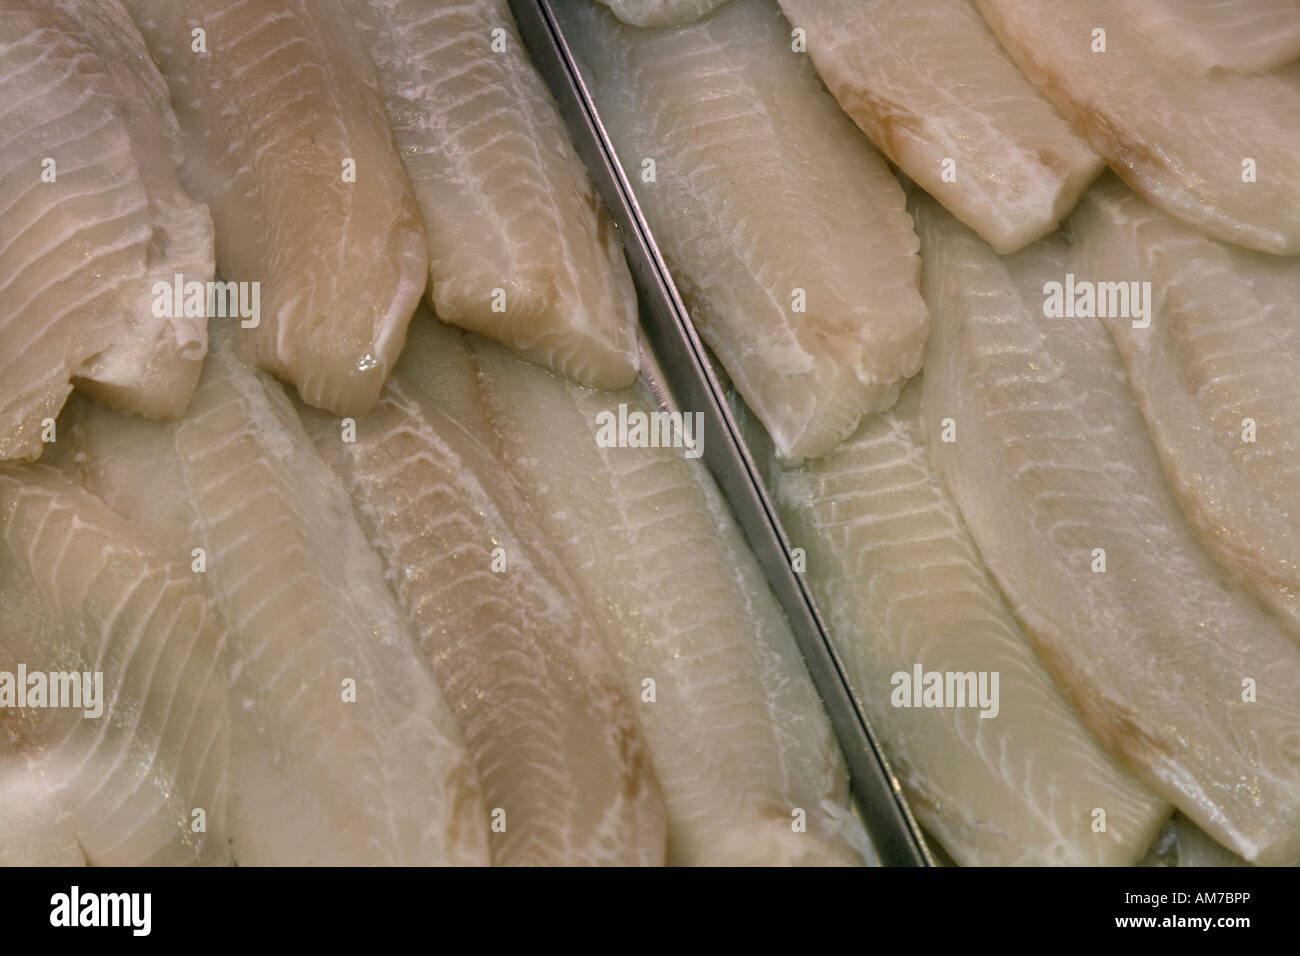 Fresco di filetti di pesce sul display Foto Stock